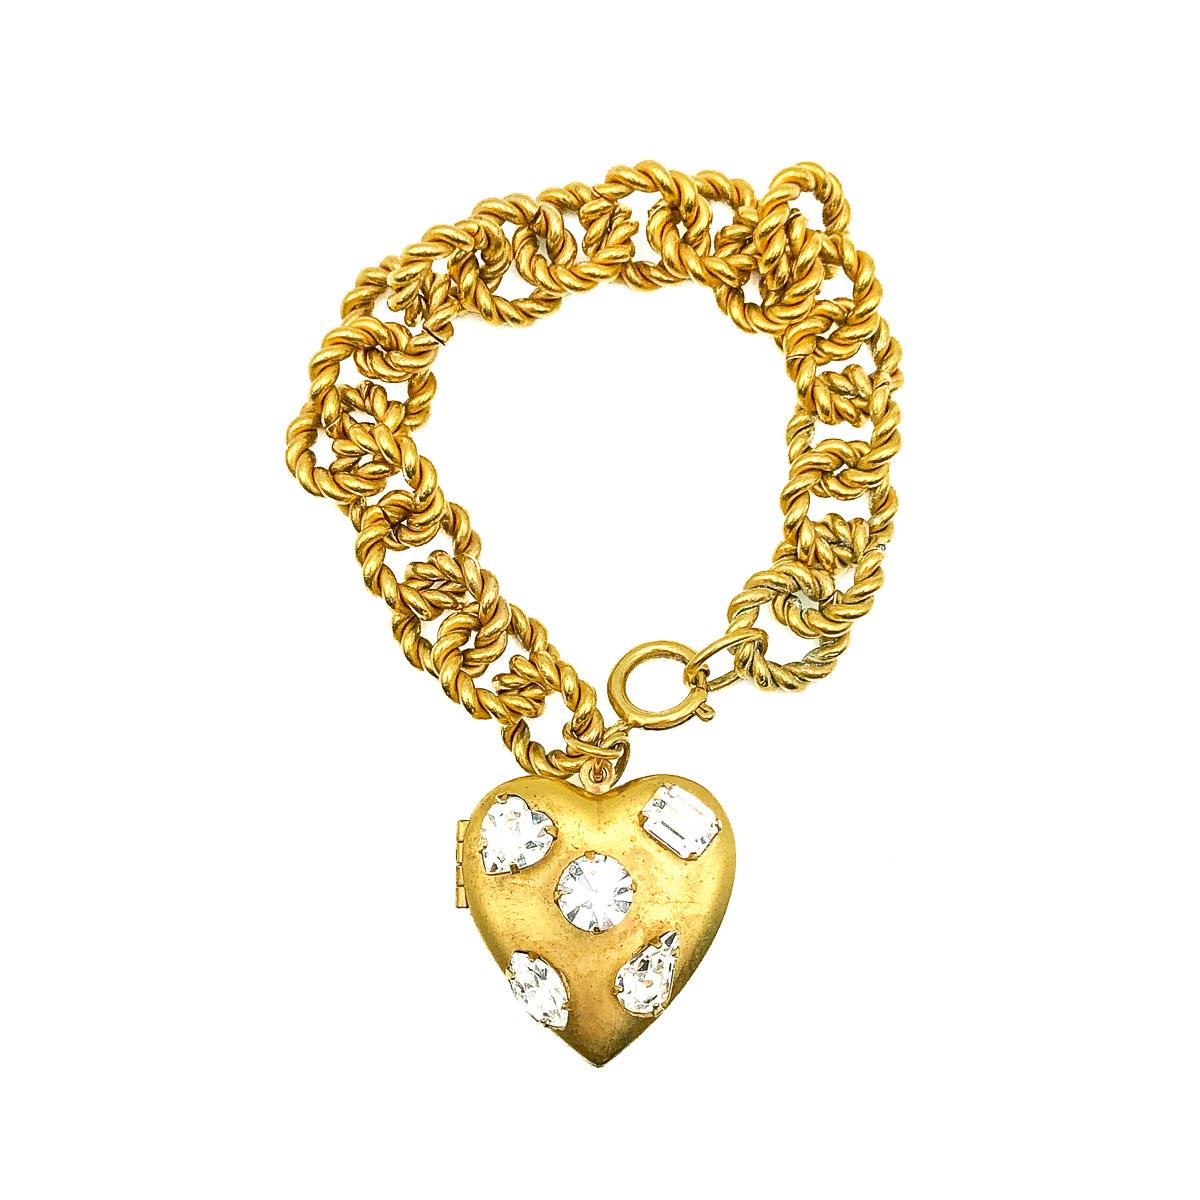 Un bracelet médaillon en forme de cœur avec une attention particulière aux détails. Réalisé en métal plaqué or et pierres de cristal de taille fantaisie. Un médaillon à grande ouverture en forme de cœur est orné de cinq pierres, chacune d'une taille